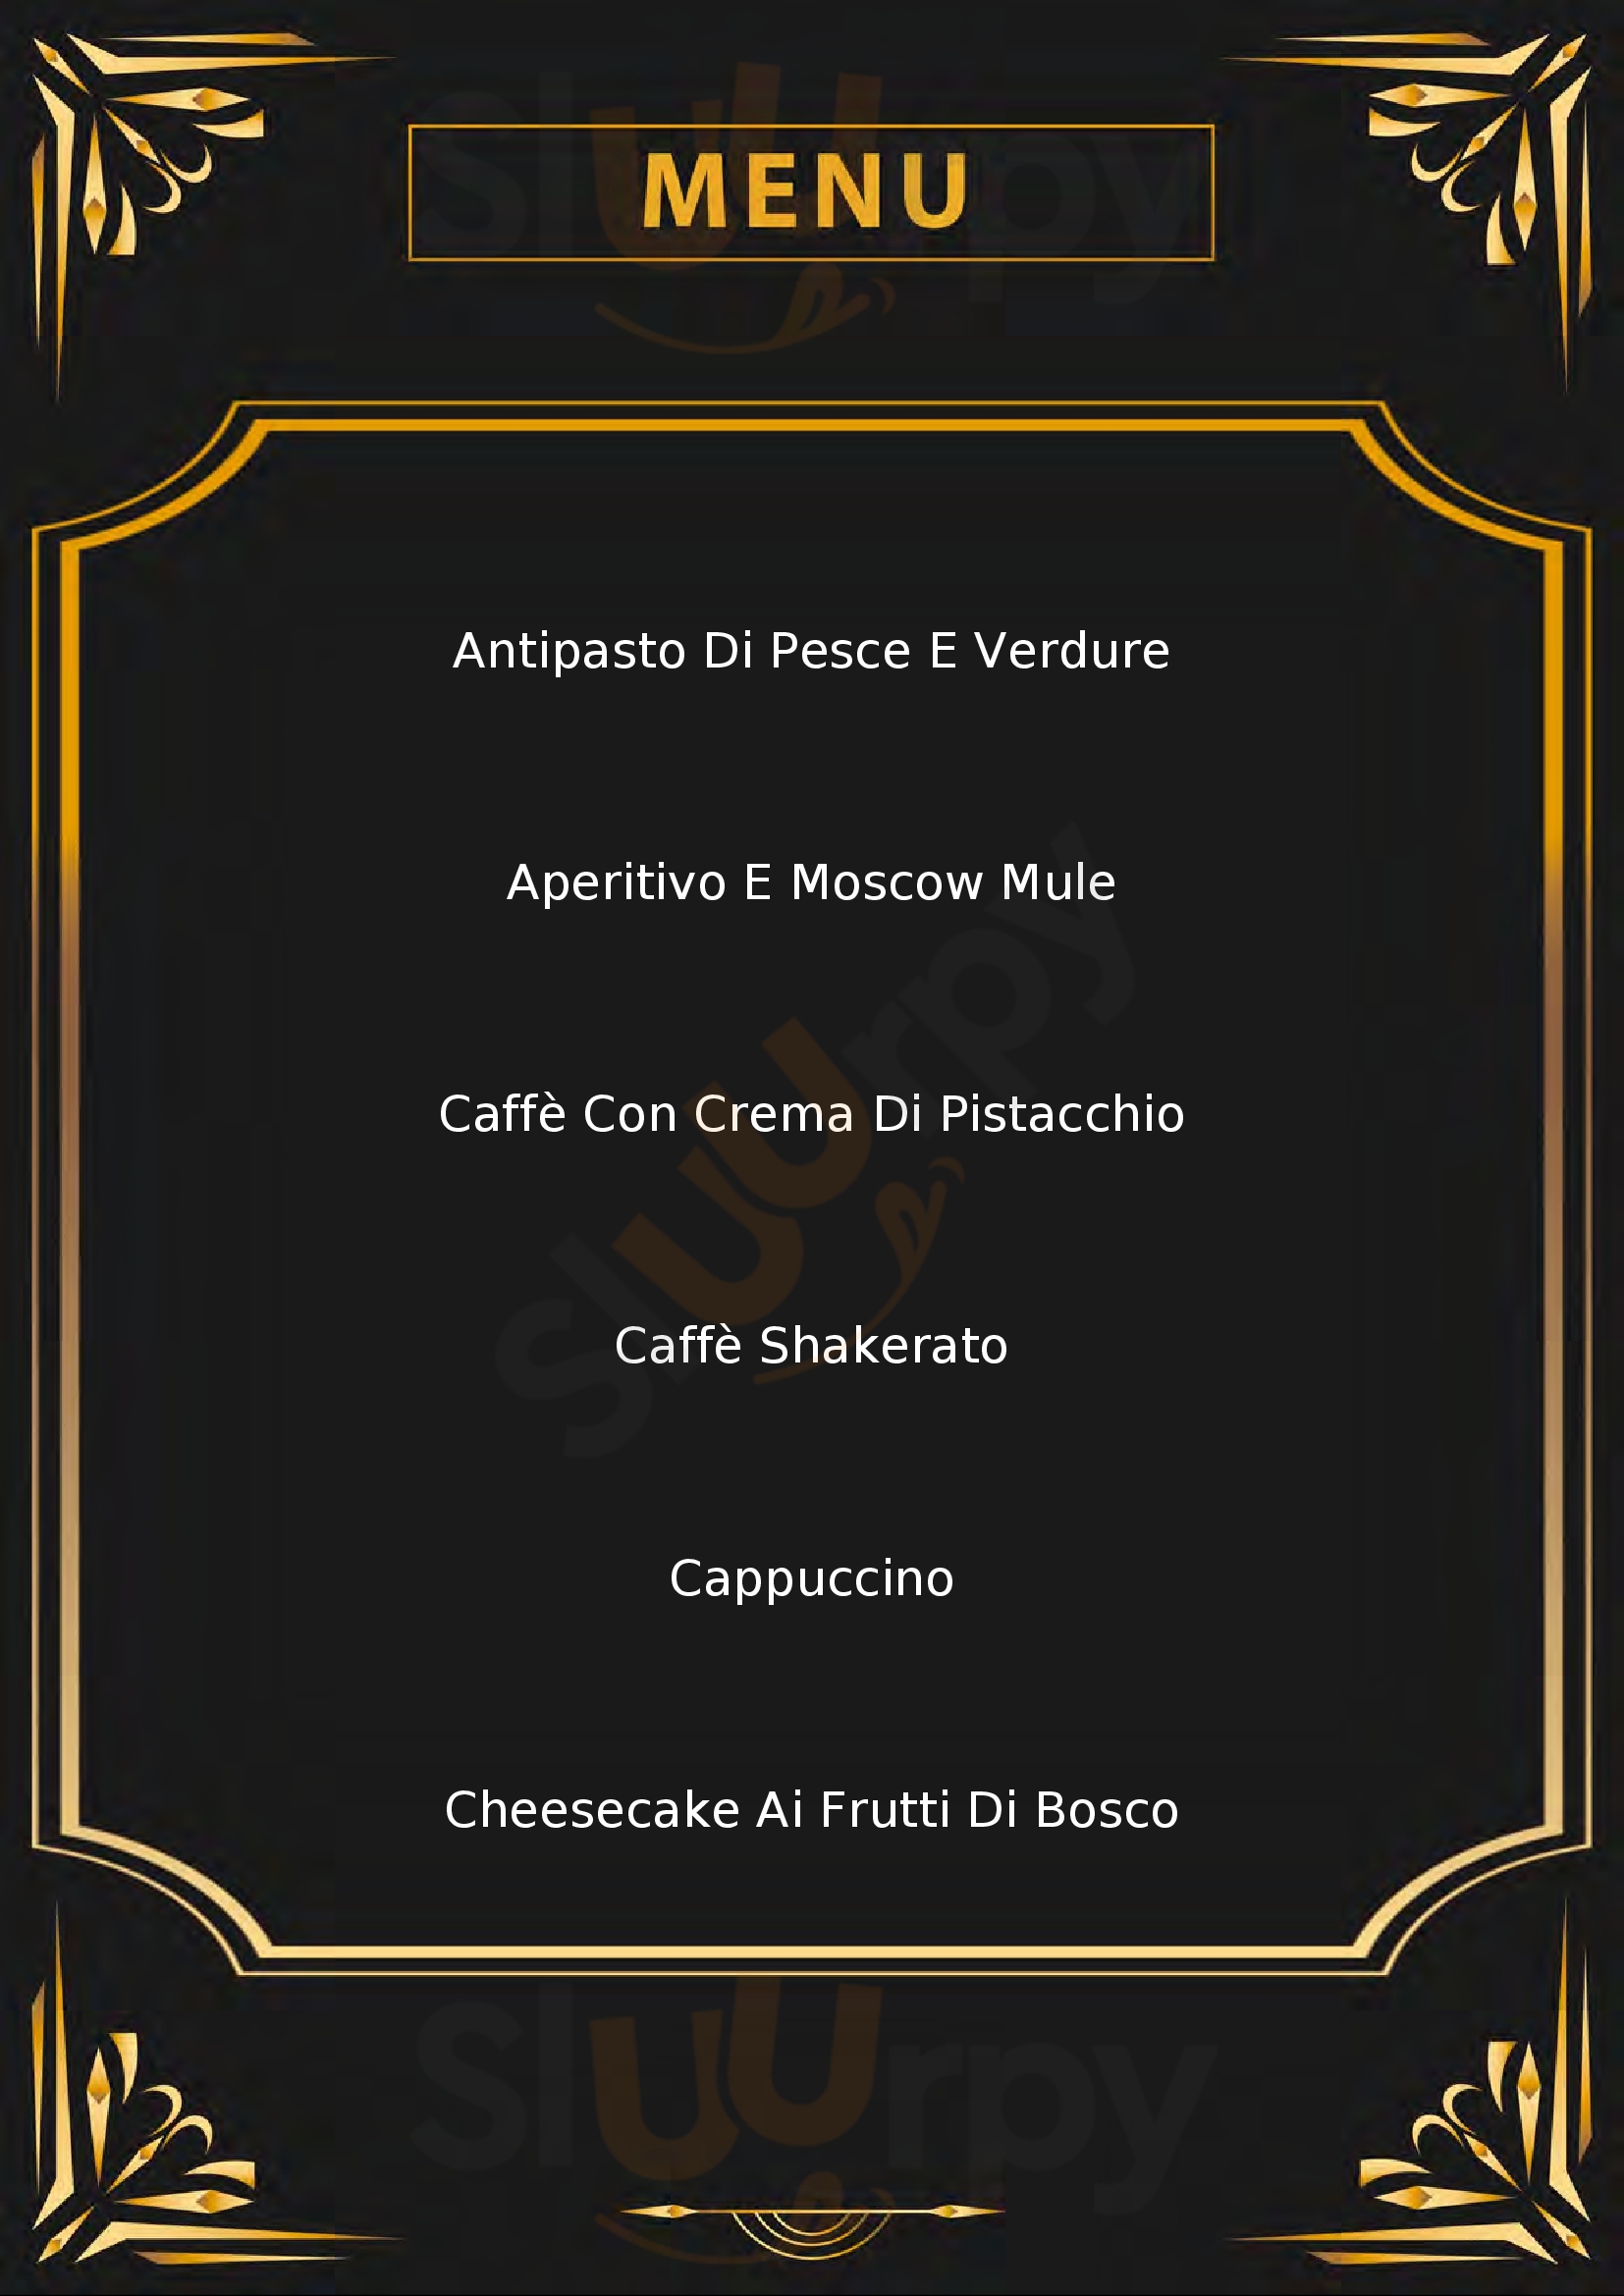 Caffe della piazza Osimo menù 1 pagina